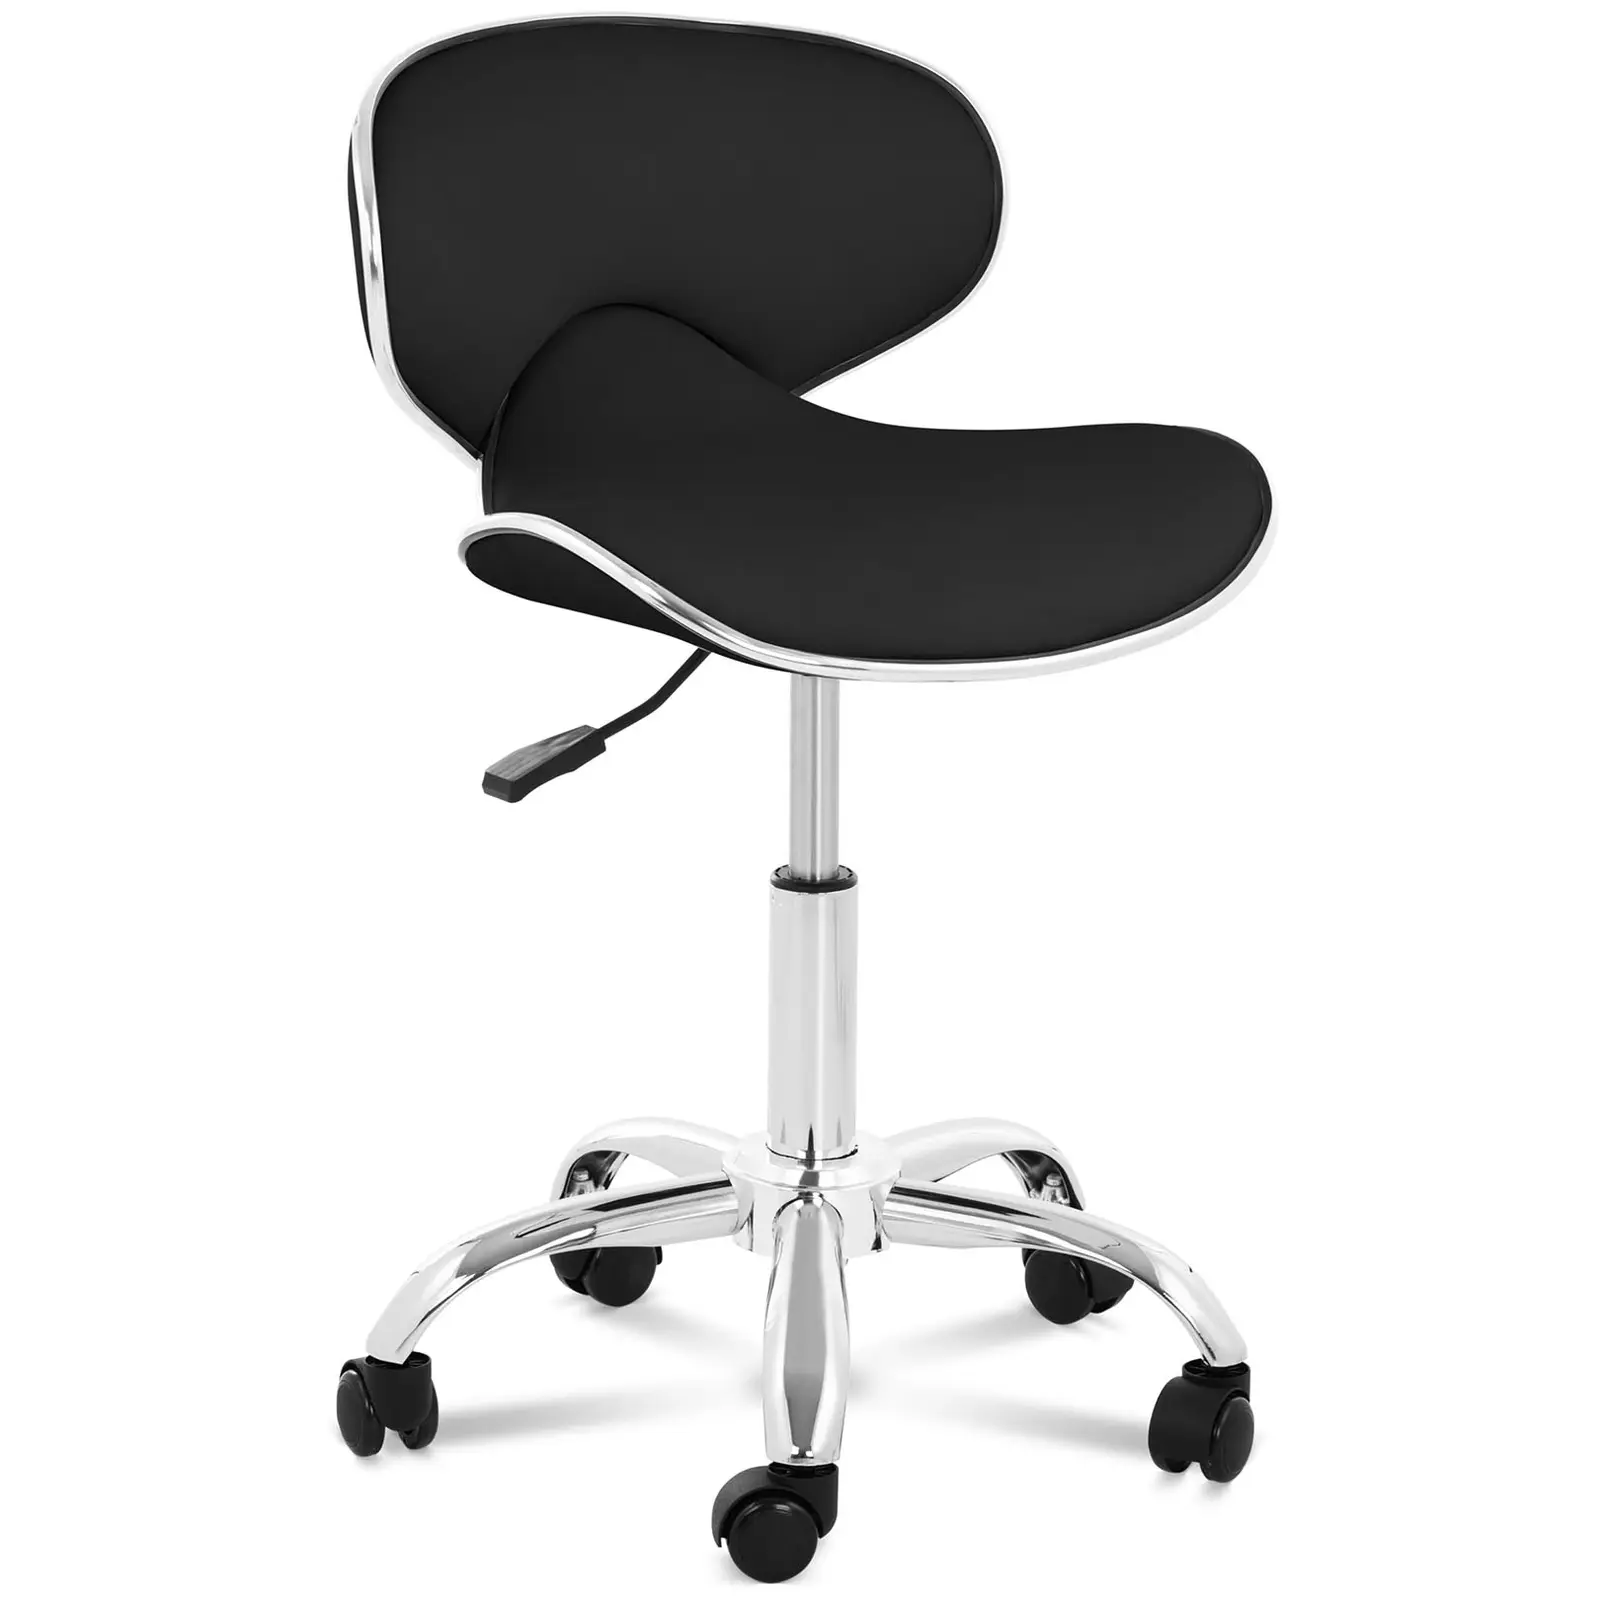 Καρέκλα-σκαμπό με πλάτη - Ύψος καθίσματος 48 - 62Cm / Ύψος 68 - 82Cm mm - 150 kg - Black